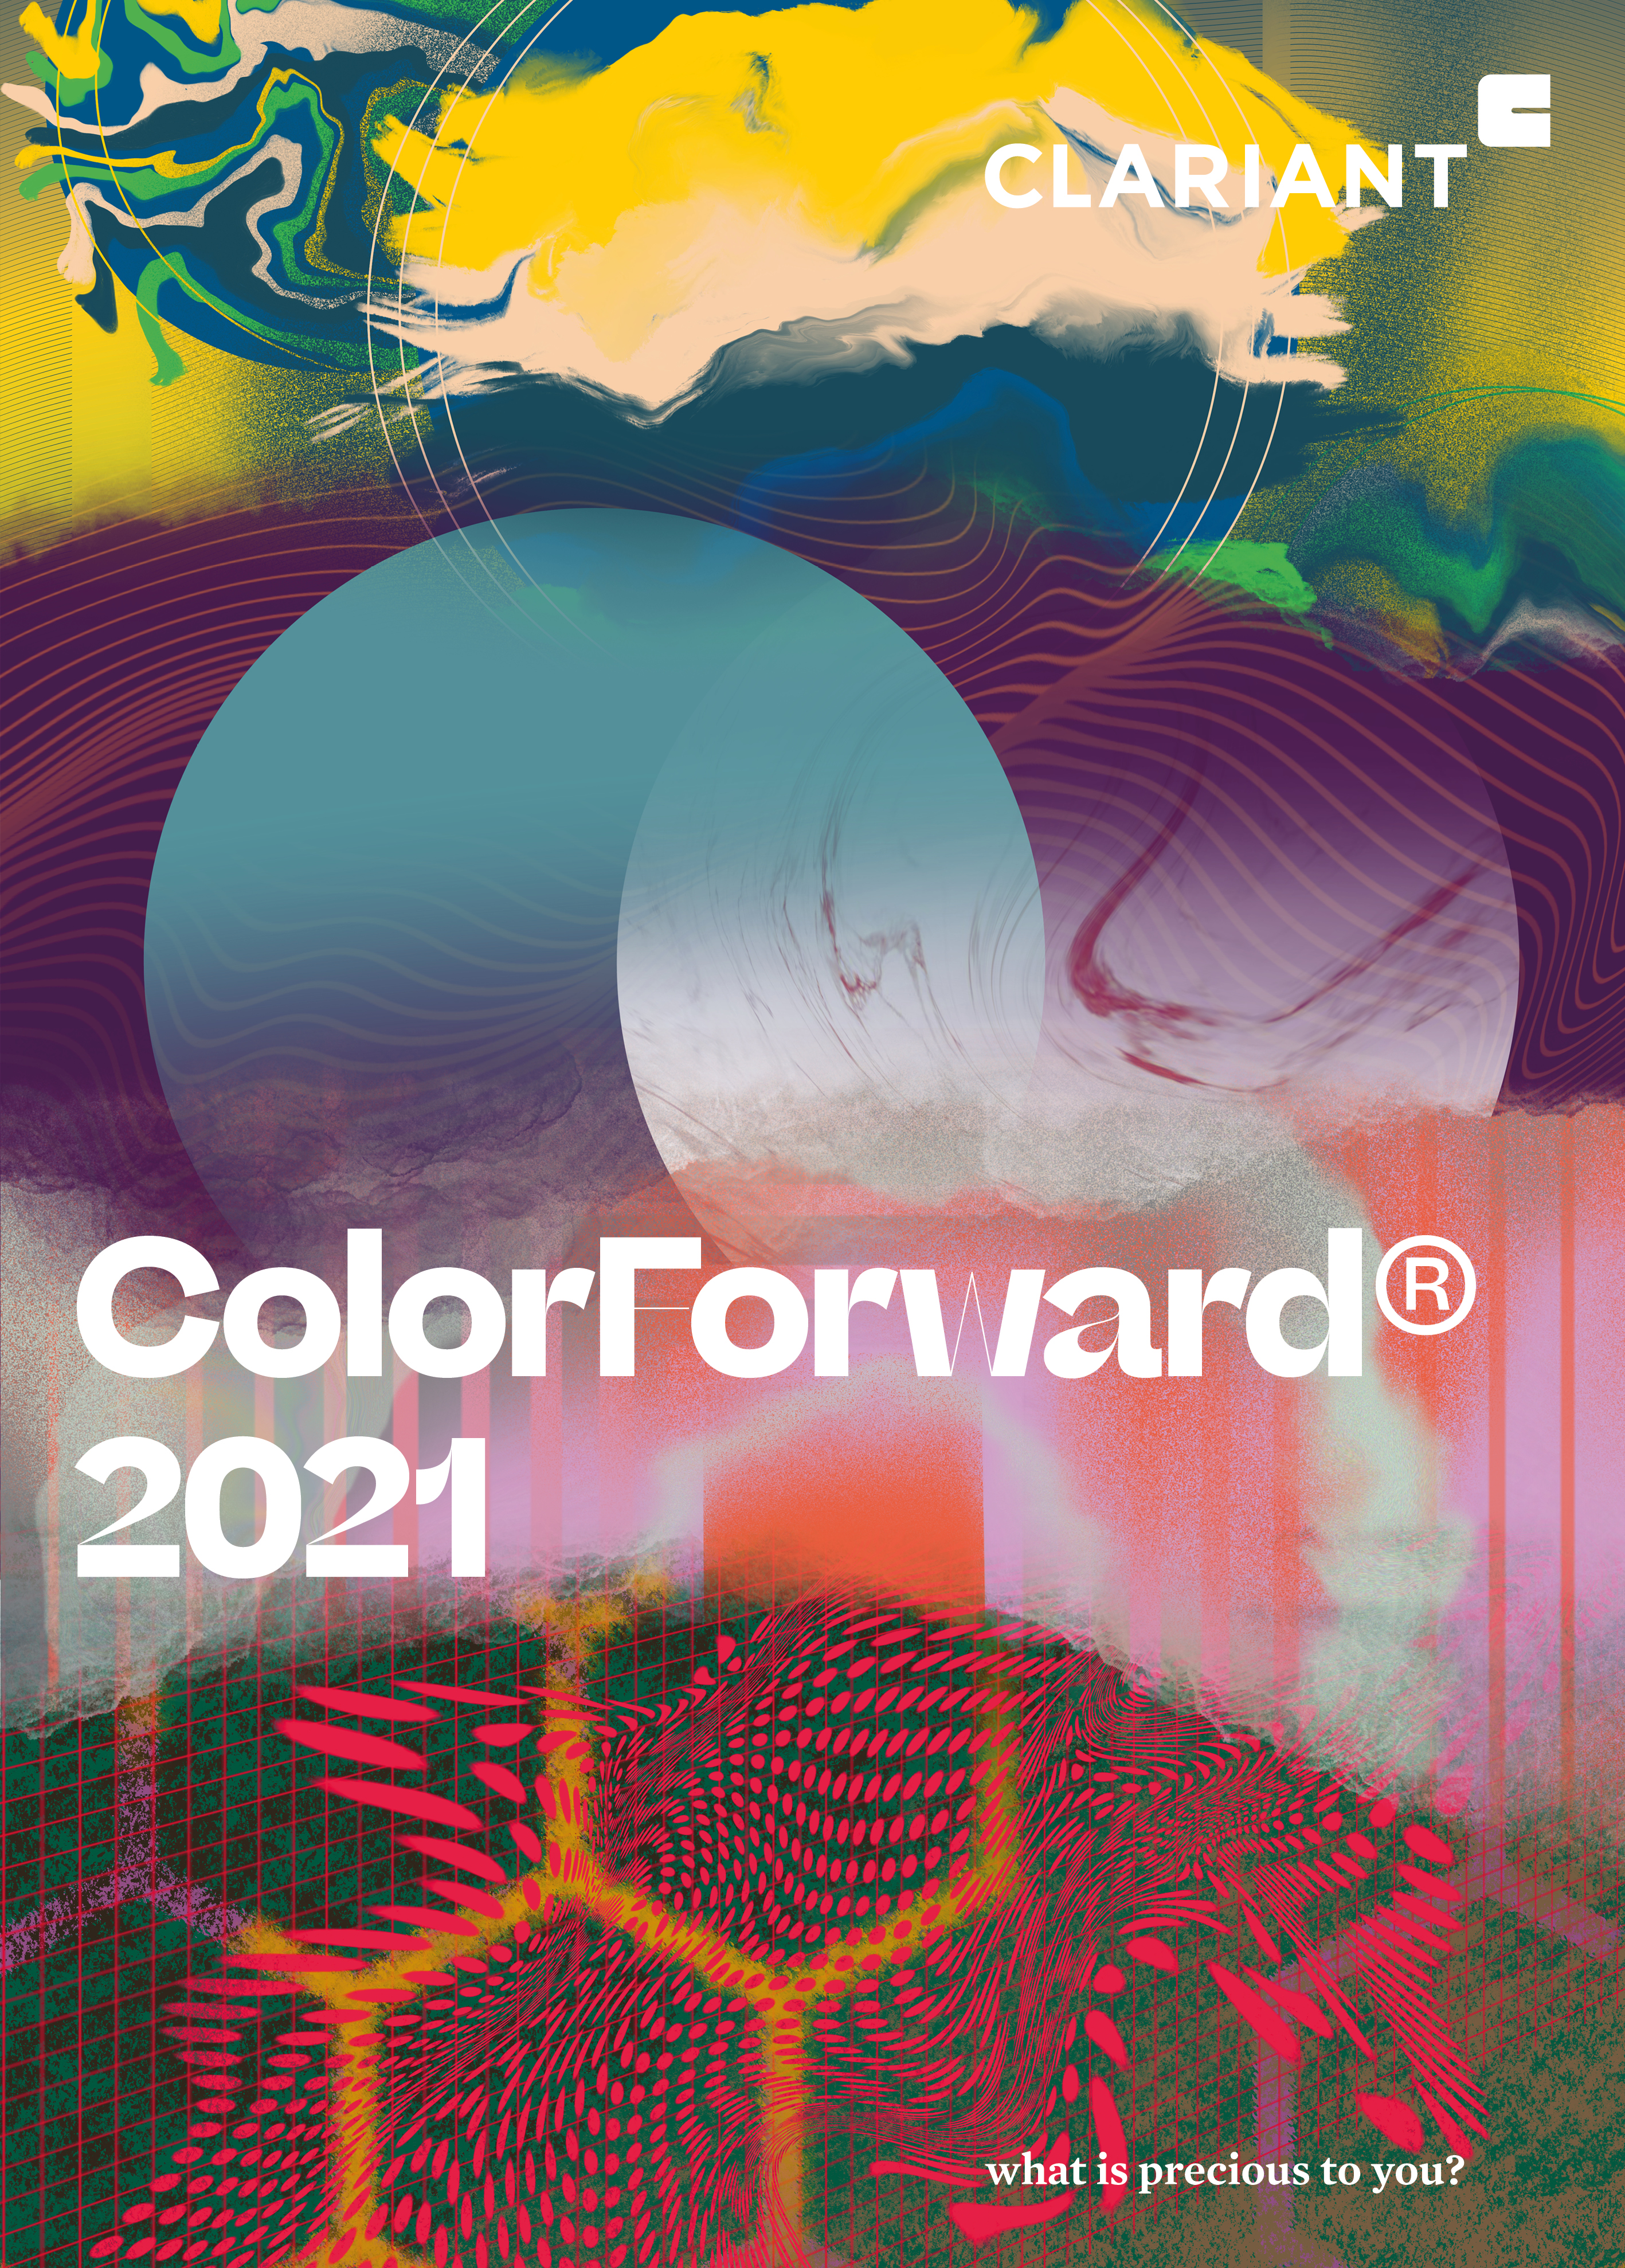 La paleta de la guía ColorForward 2021 de Clariant muestra el deseo de contacto humano y la búsque...